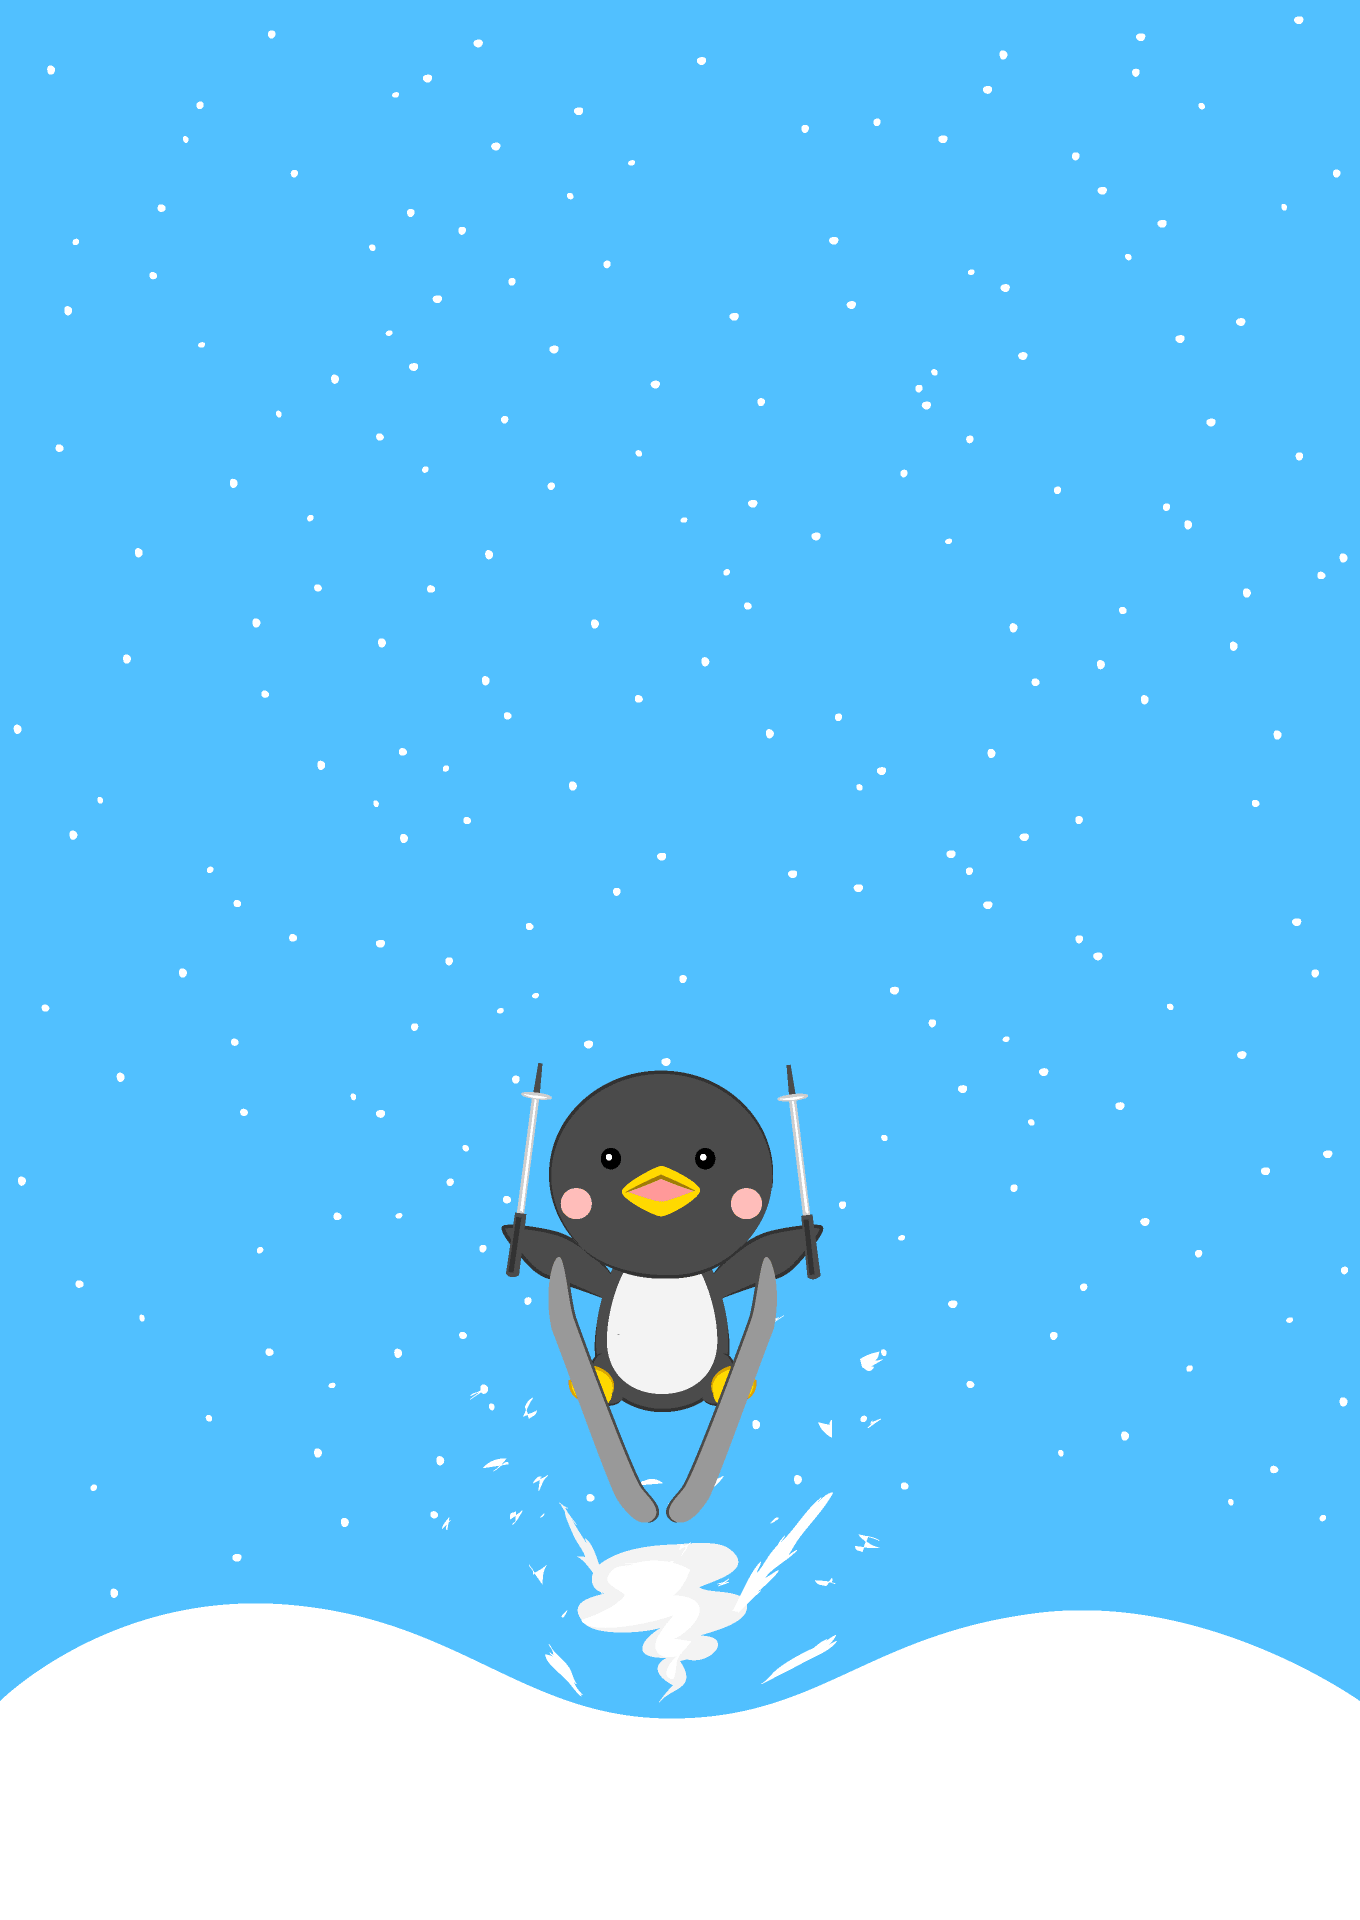 スキージャンプするペンギンの背景画像 イラスト素材 超多くの無料かわいいイラスト素材